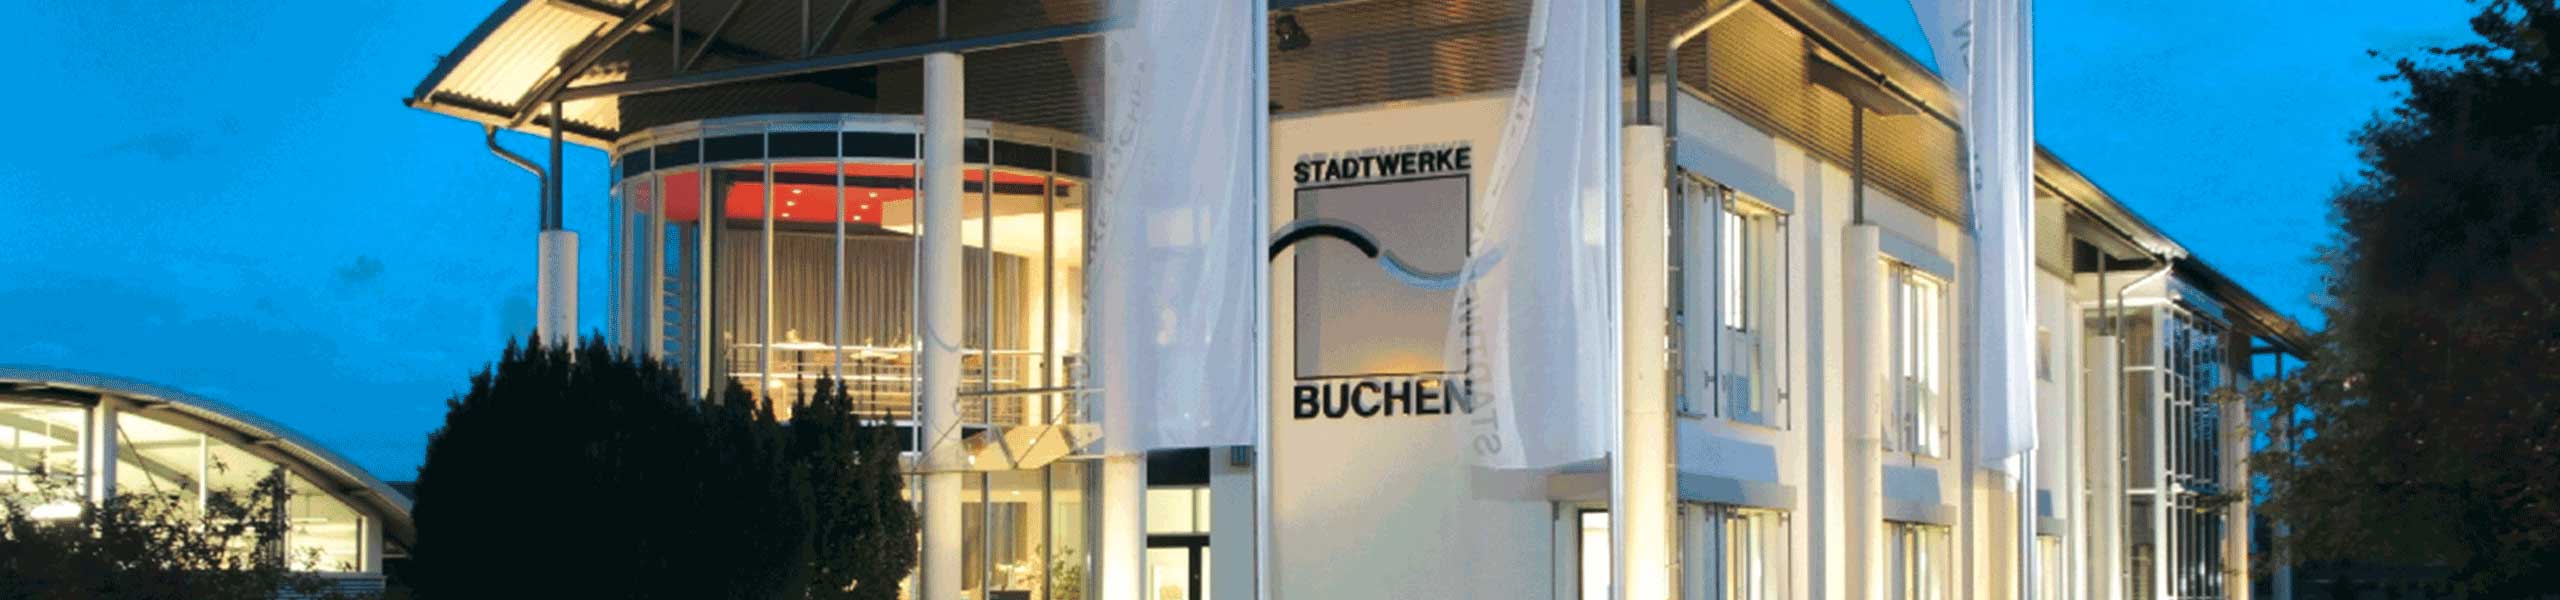 Stadtwerke Buchen GmbH & Co KG - Ihr Versorger vor Ort - Die Buchener Stadtwerke raten von Heizlüftern ab: teuer, ineffizient und überlasten schlimmstenfalls das Stromnetz